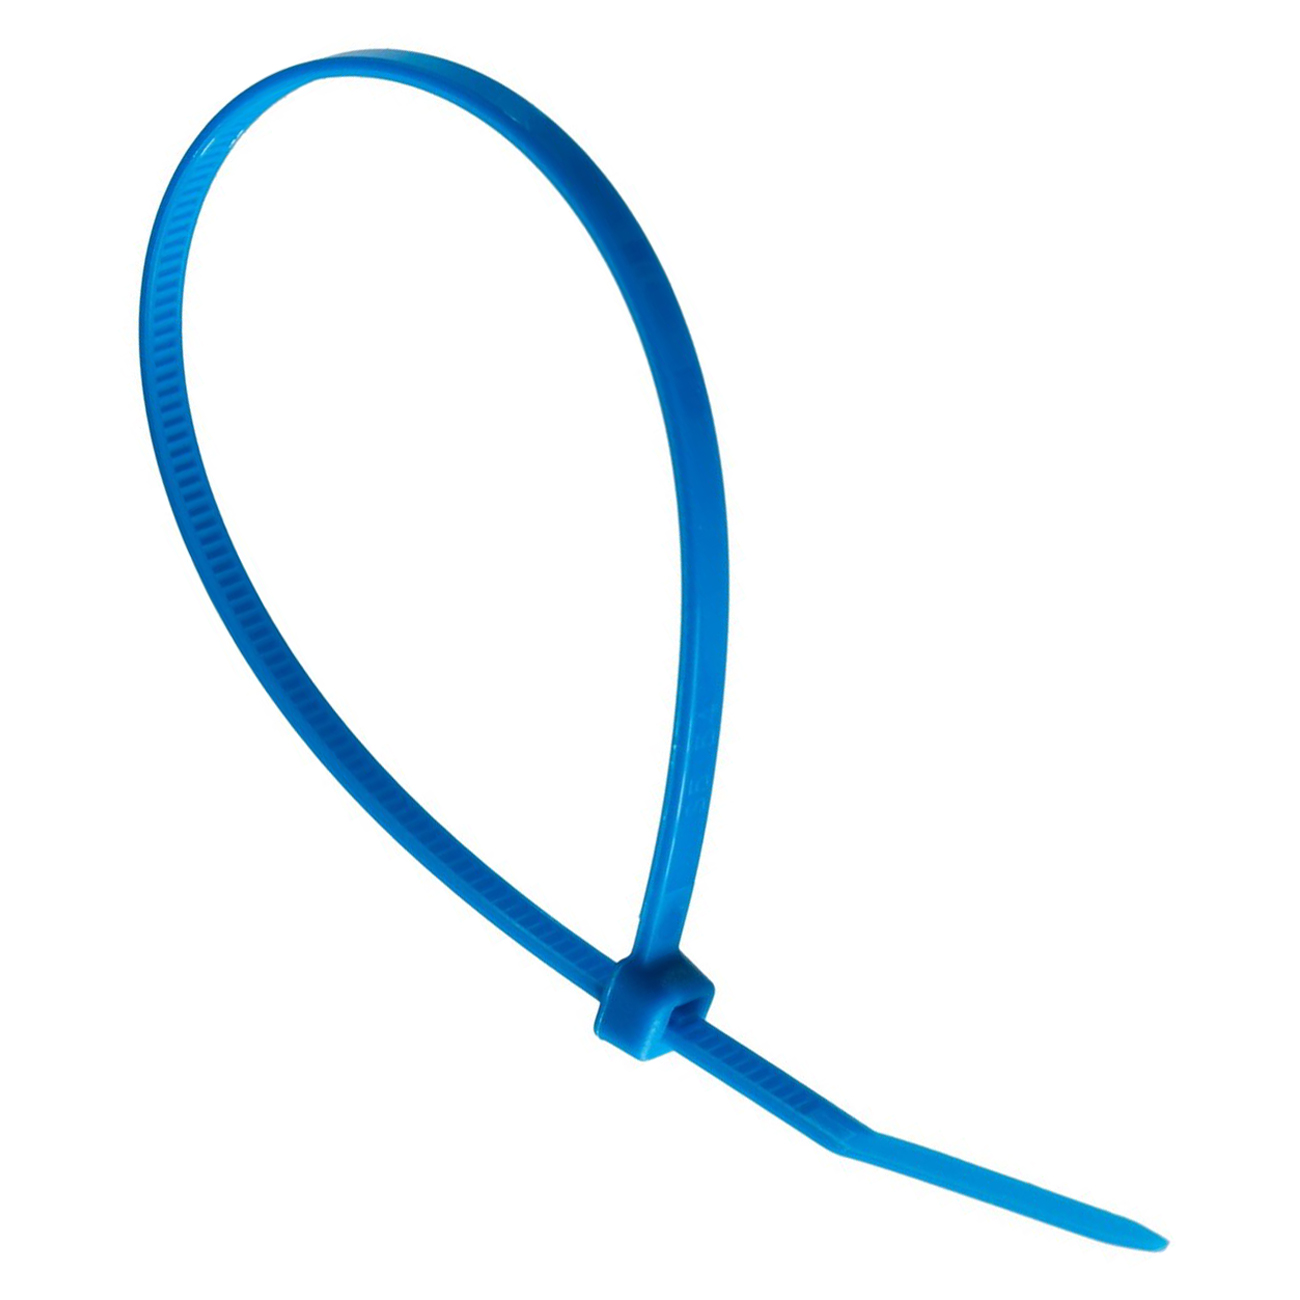 Фото Хомут кабельный стандартный Partex, 200 x 3.6 мм, синий (100 шт.) {PKB-20036-6}